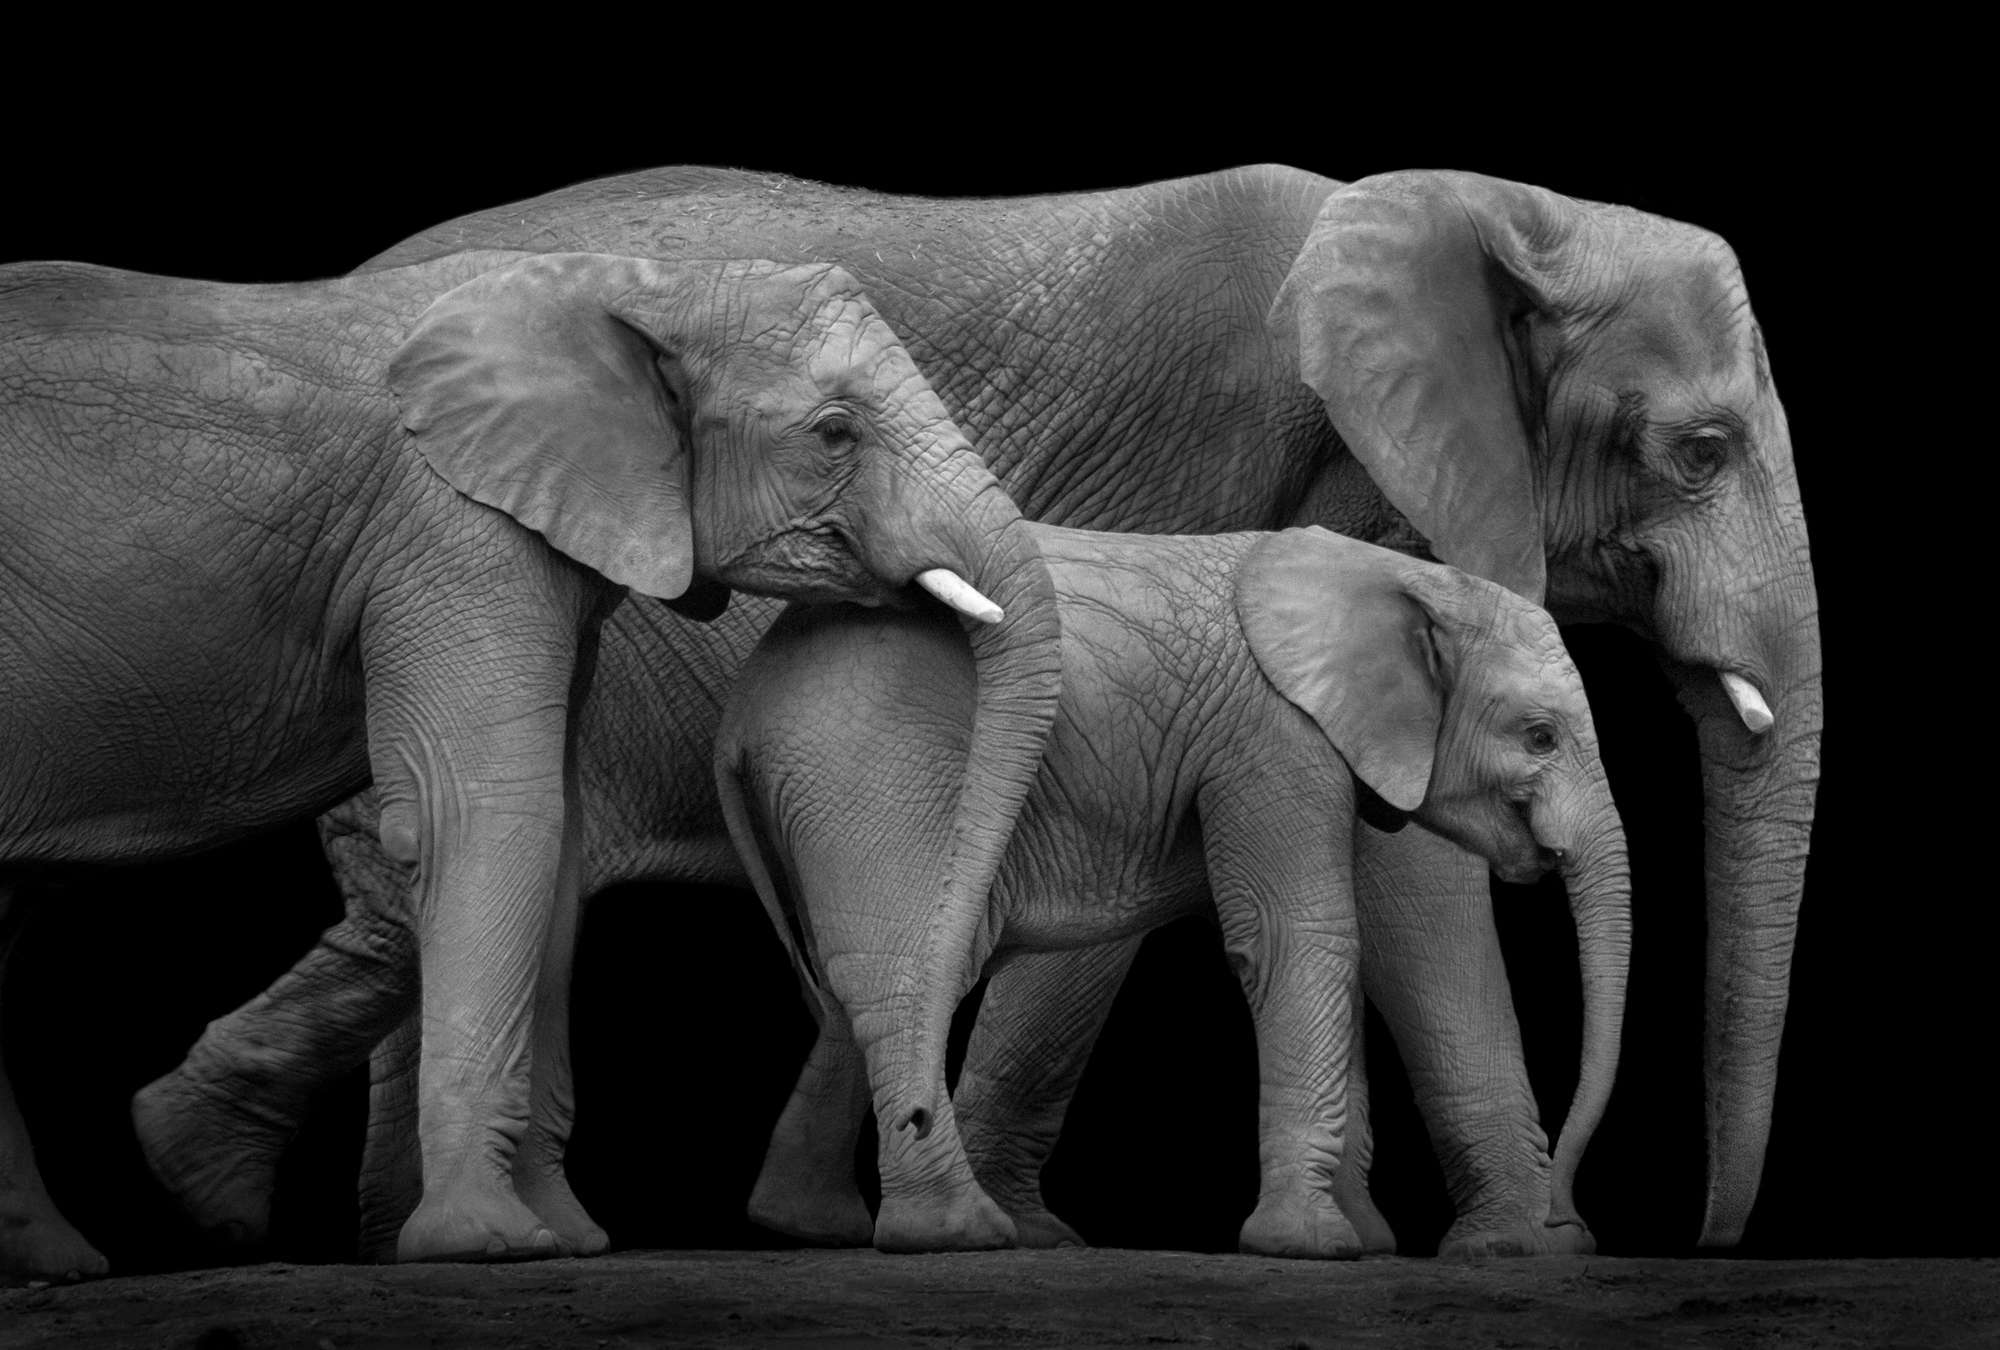             Mural de una familia de elefantes sobre fondo negro
        